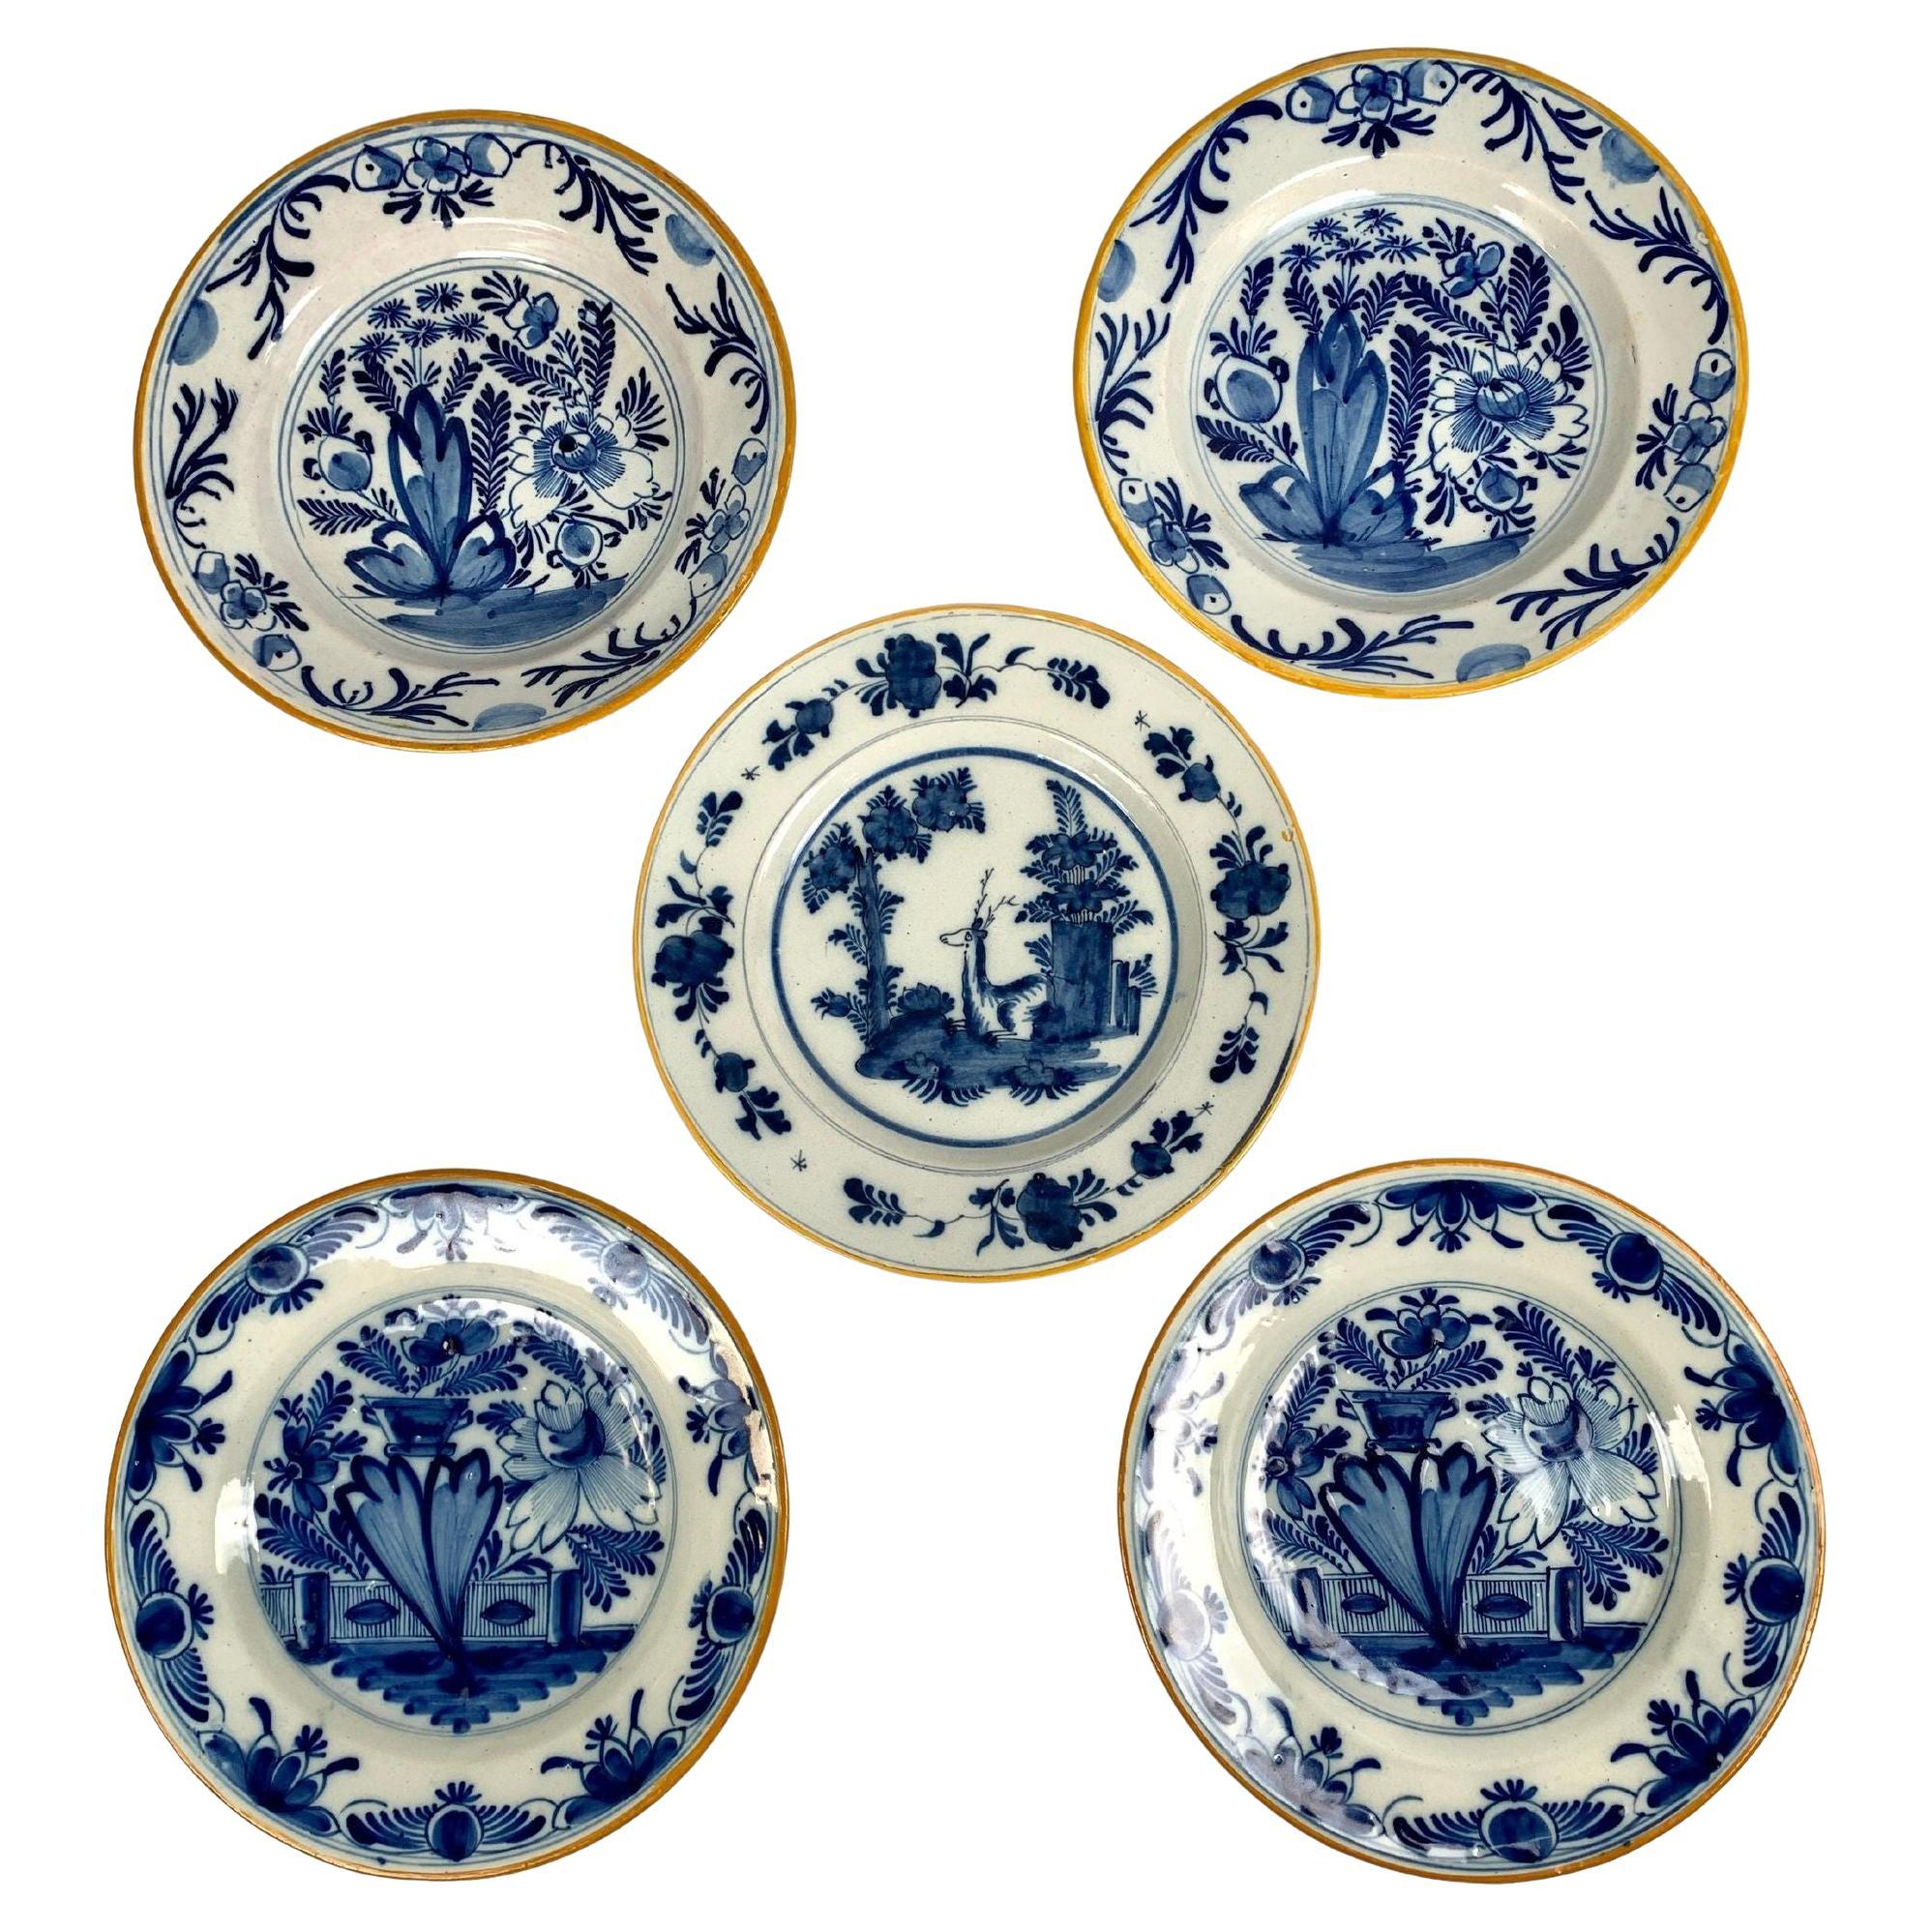 Fünf blau-weiße Delft-Teller oder -Gerichte, handbemalt, Niederlande, um 1800